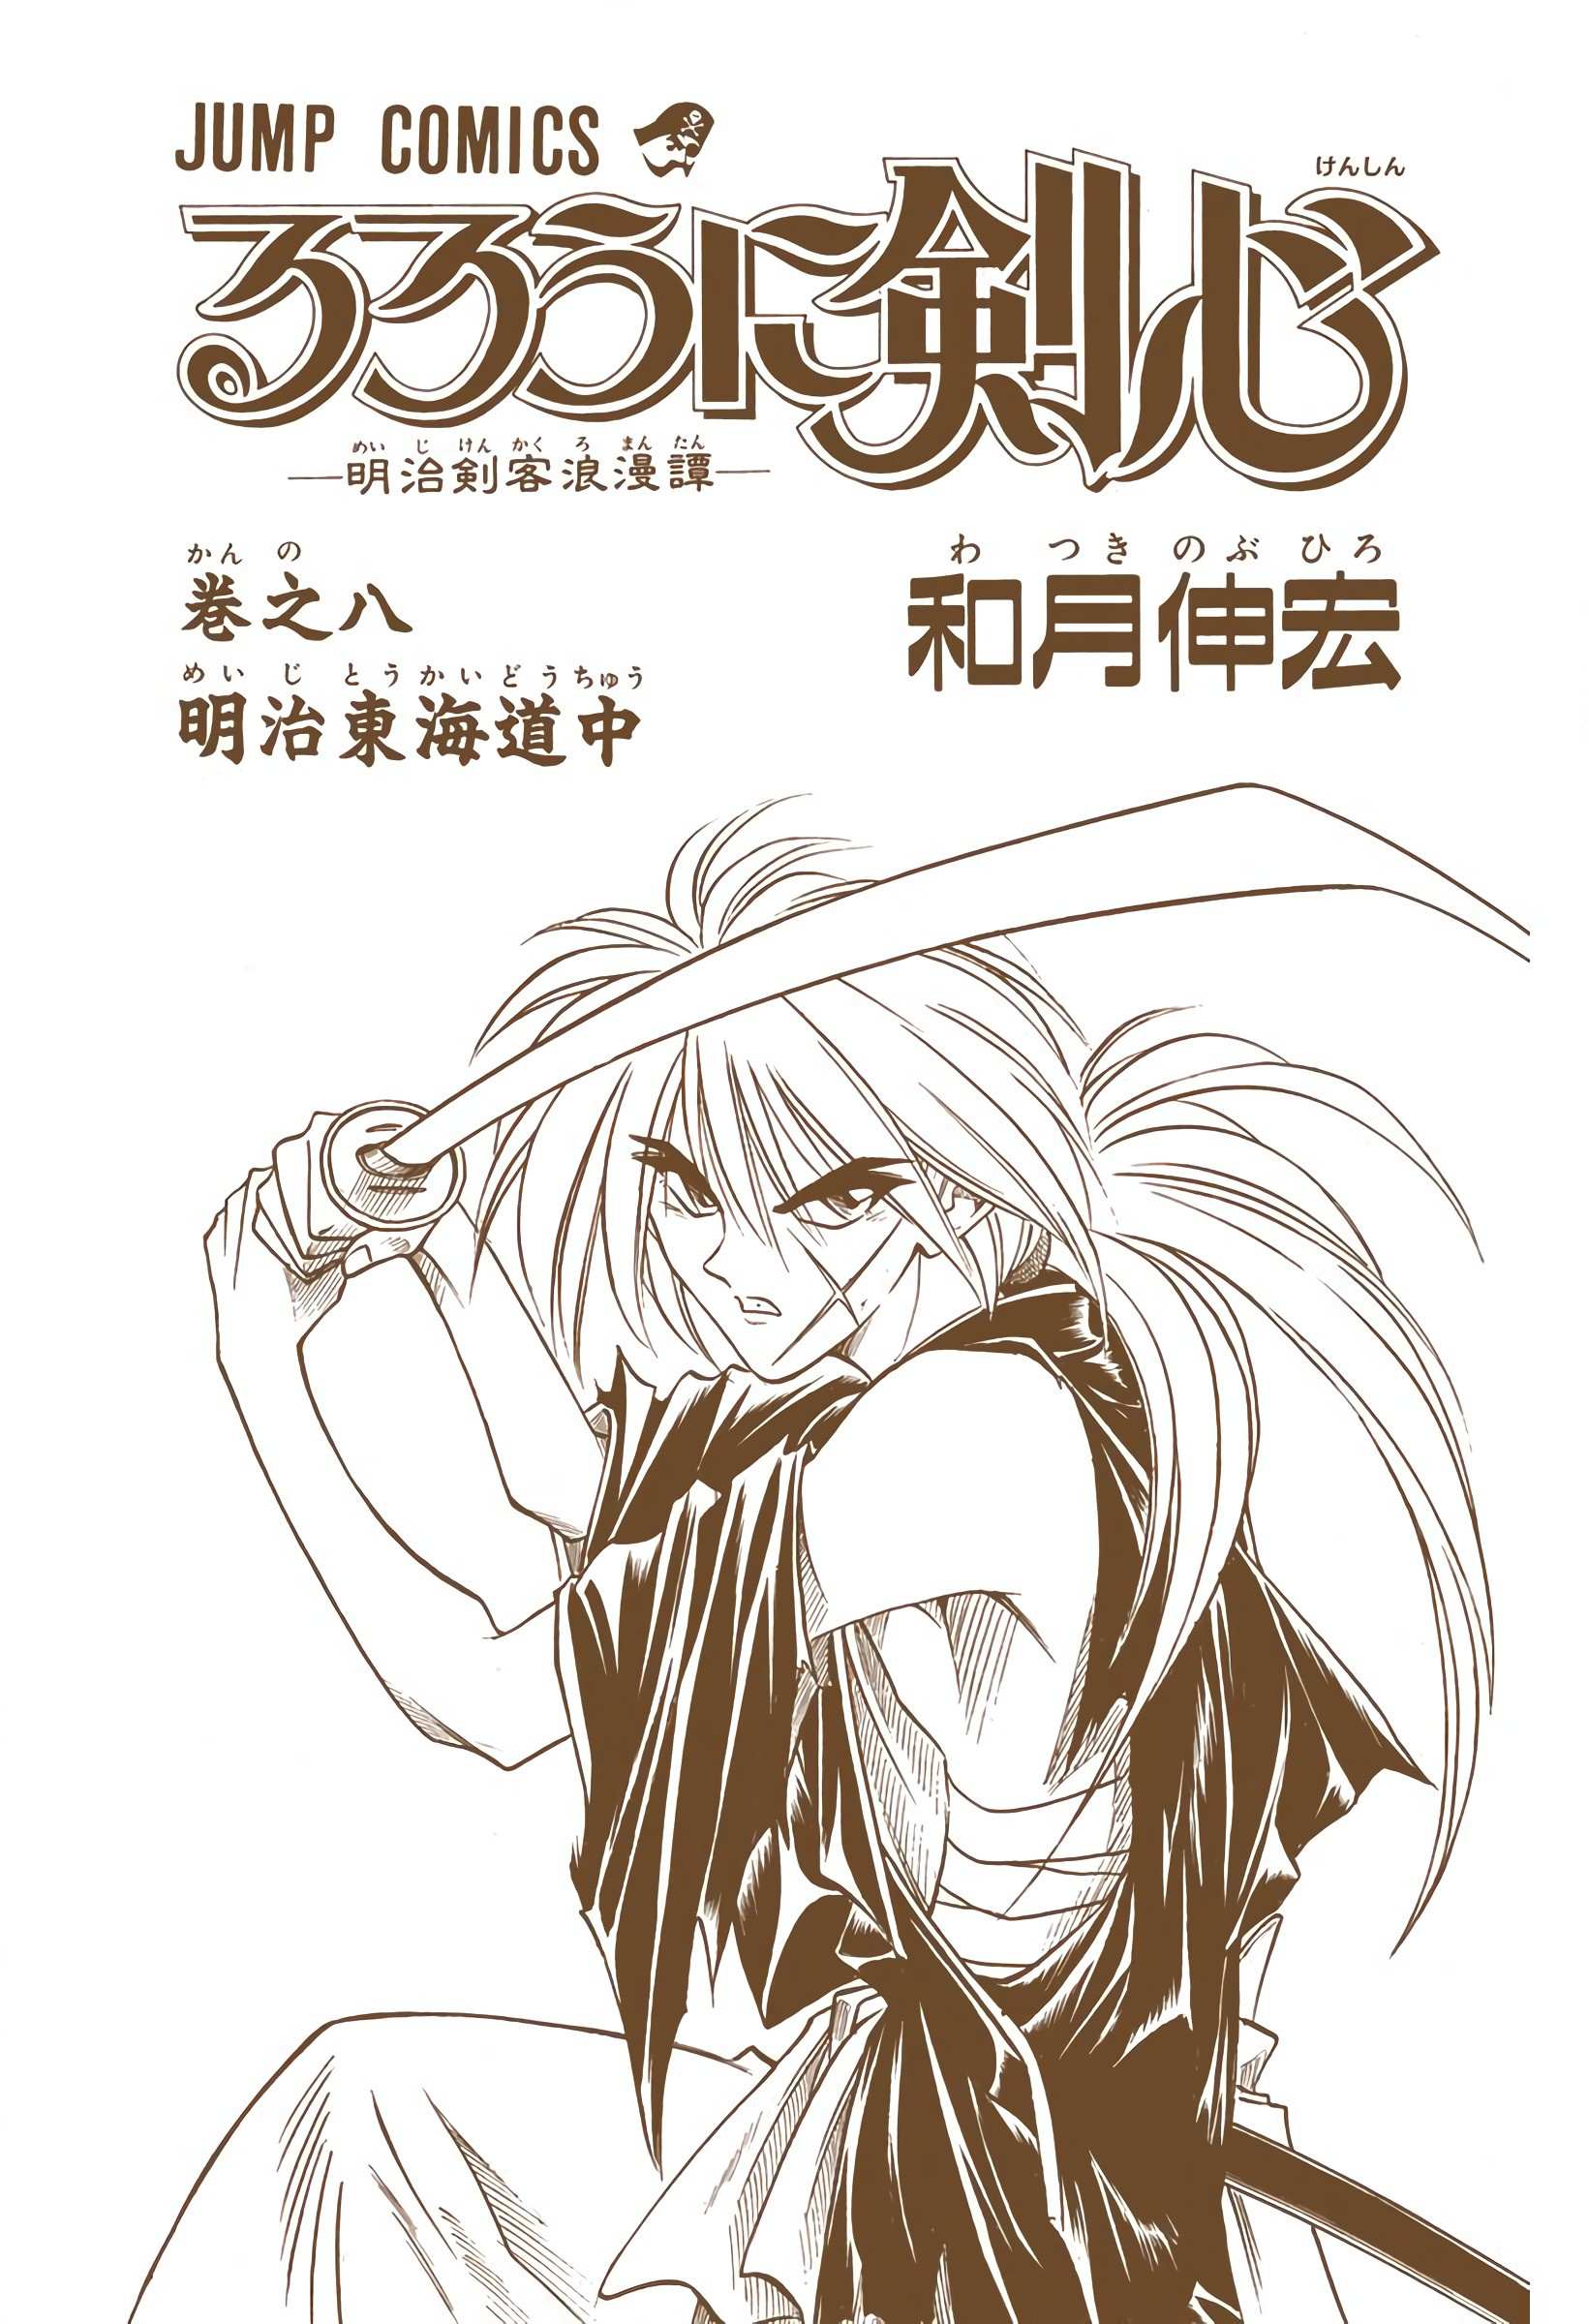 Rurouni Kenshin: Meiji Kenkaku Romantan - Digital Colored - chapter 58 - #4